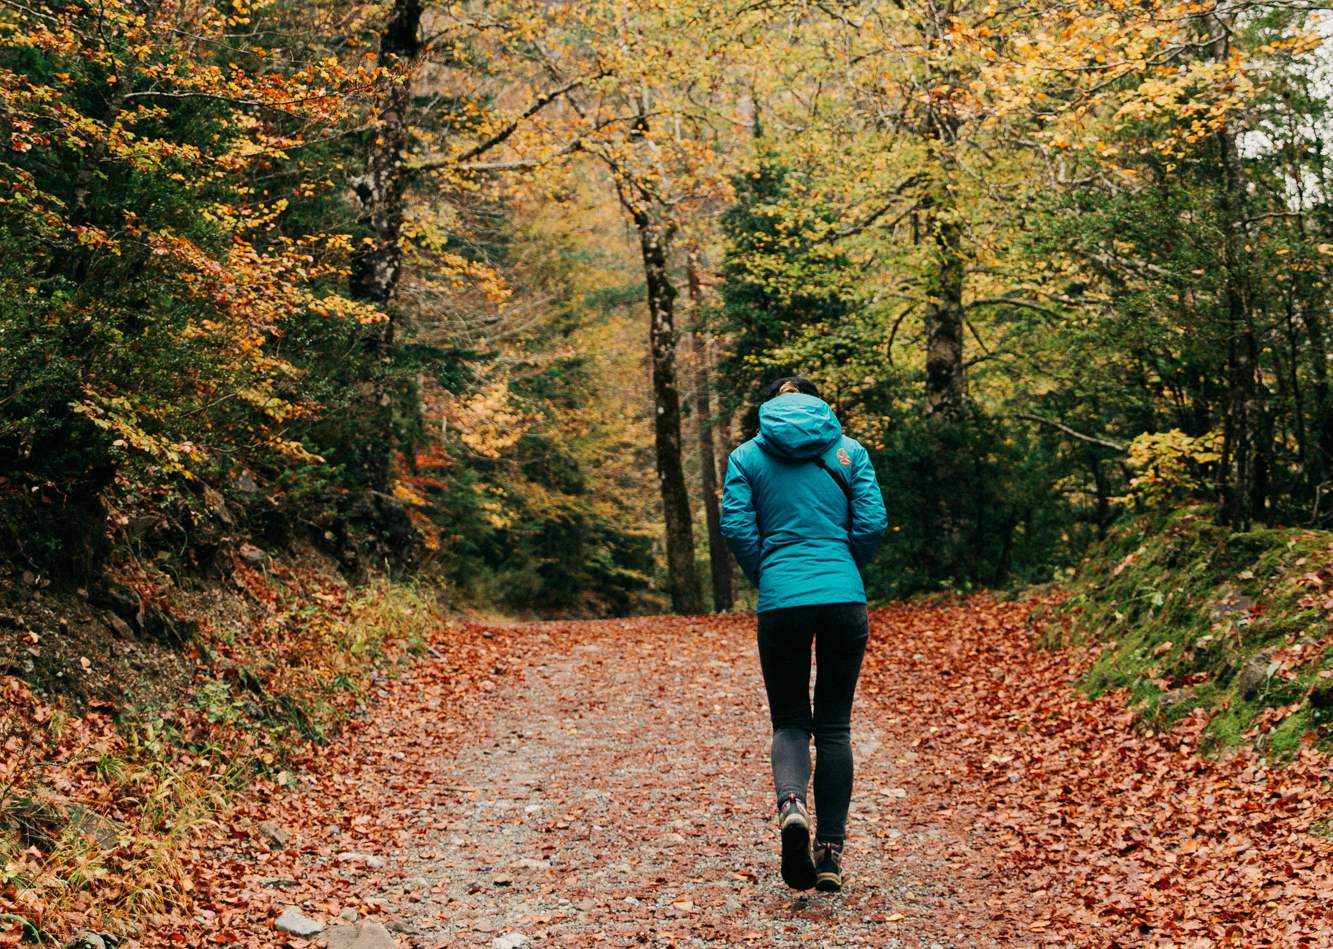 en otoño:Ropa montaña para una ruta de senderismo en otoño